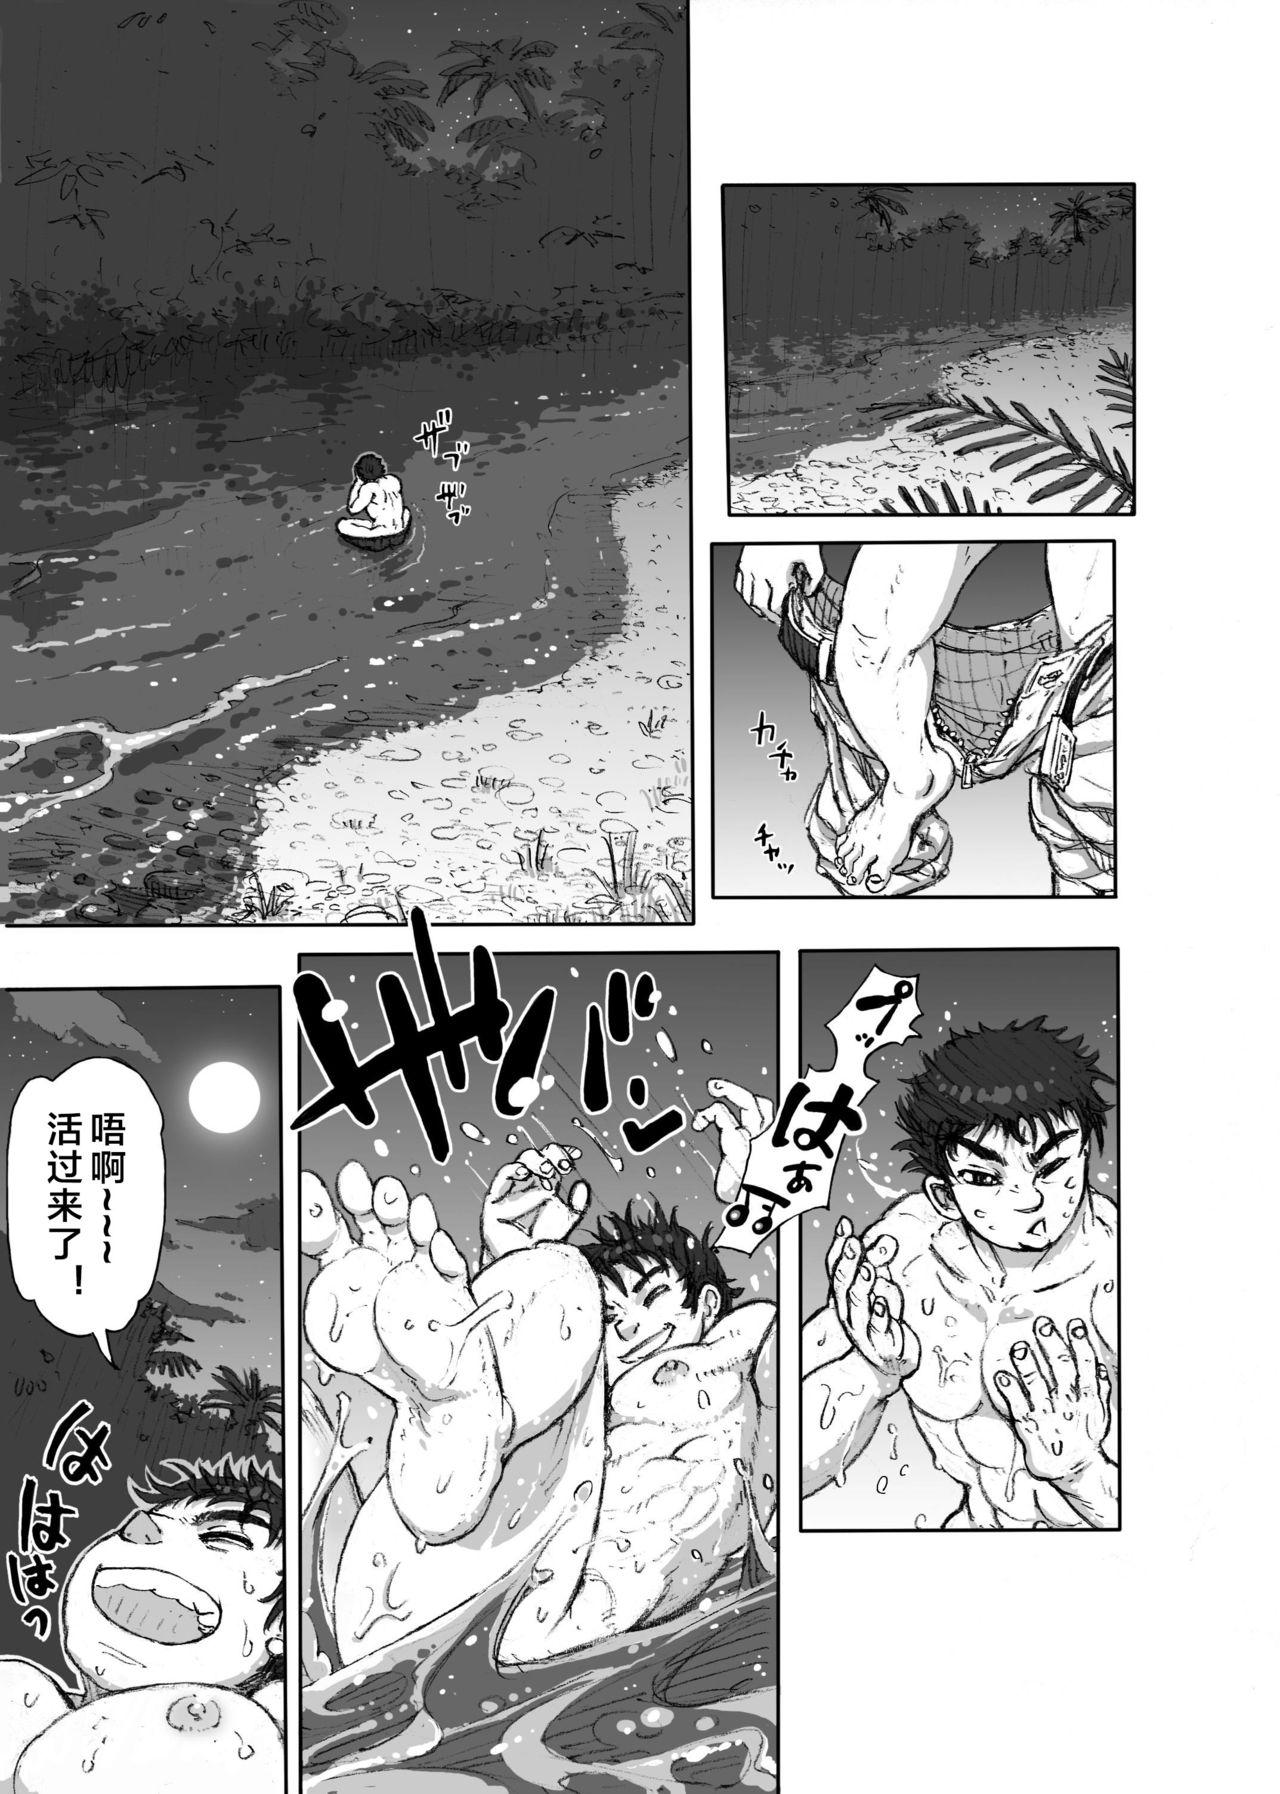 Cougars Hepoe no Kuni kara 1 - Mizu no Gakusha Sensei, Hi no Buzoku no Saru ni Hazukashimerareru no Maki Twink - Page 5